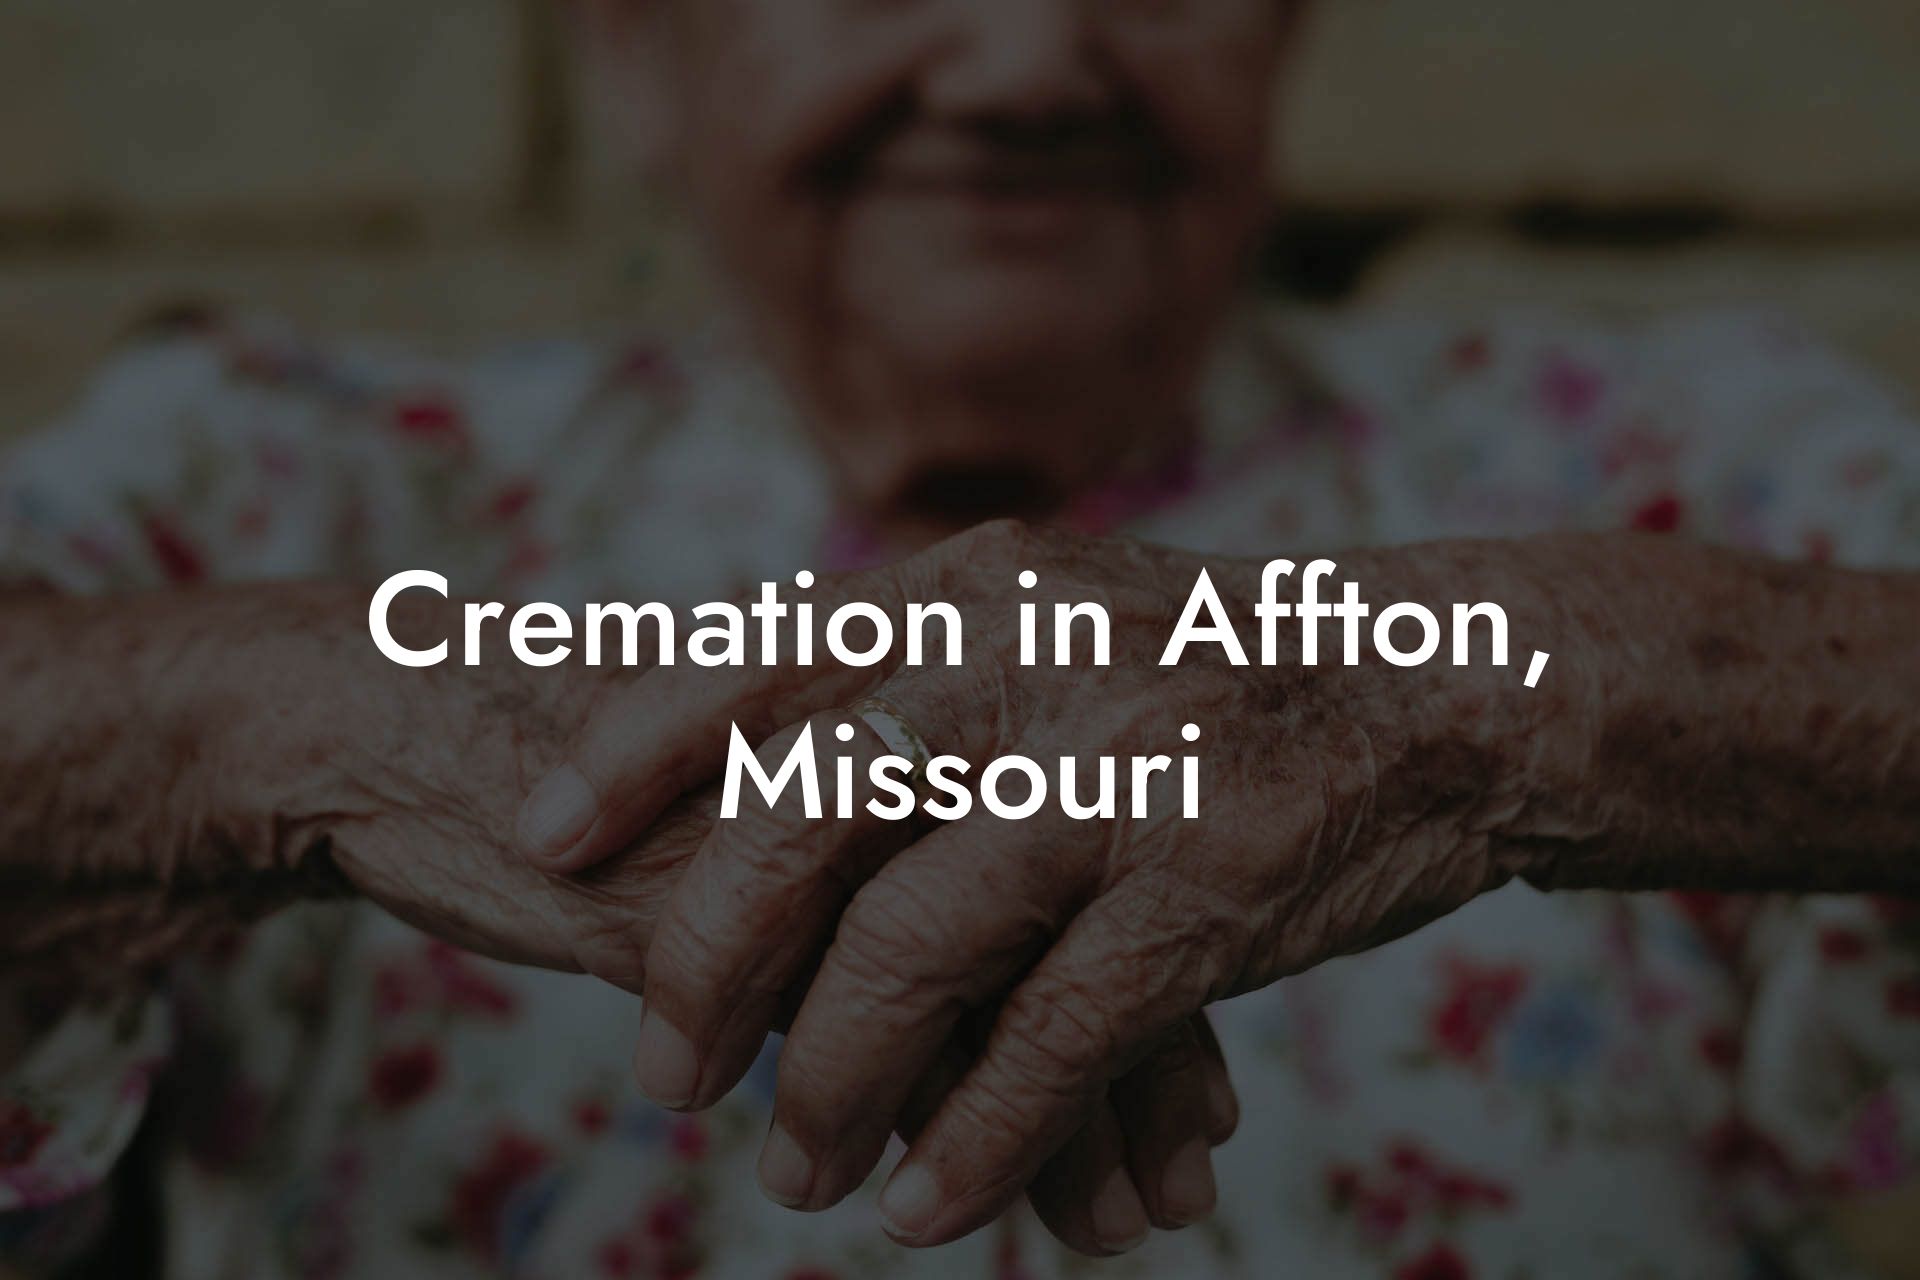 Cremation in Affton, Missouri